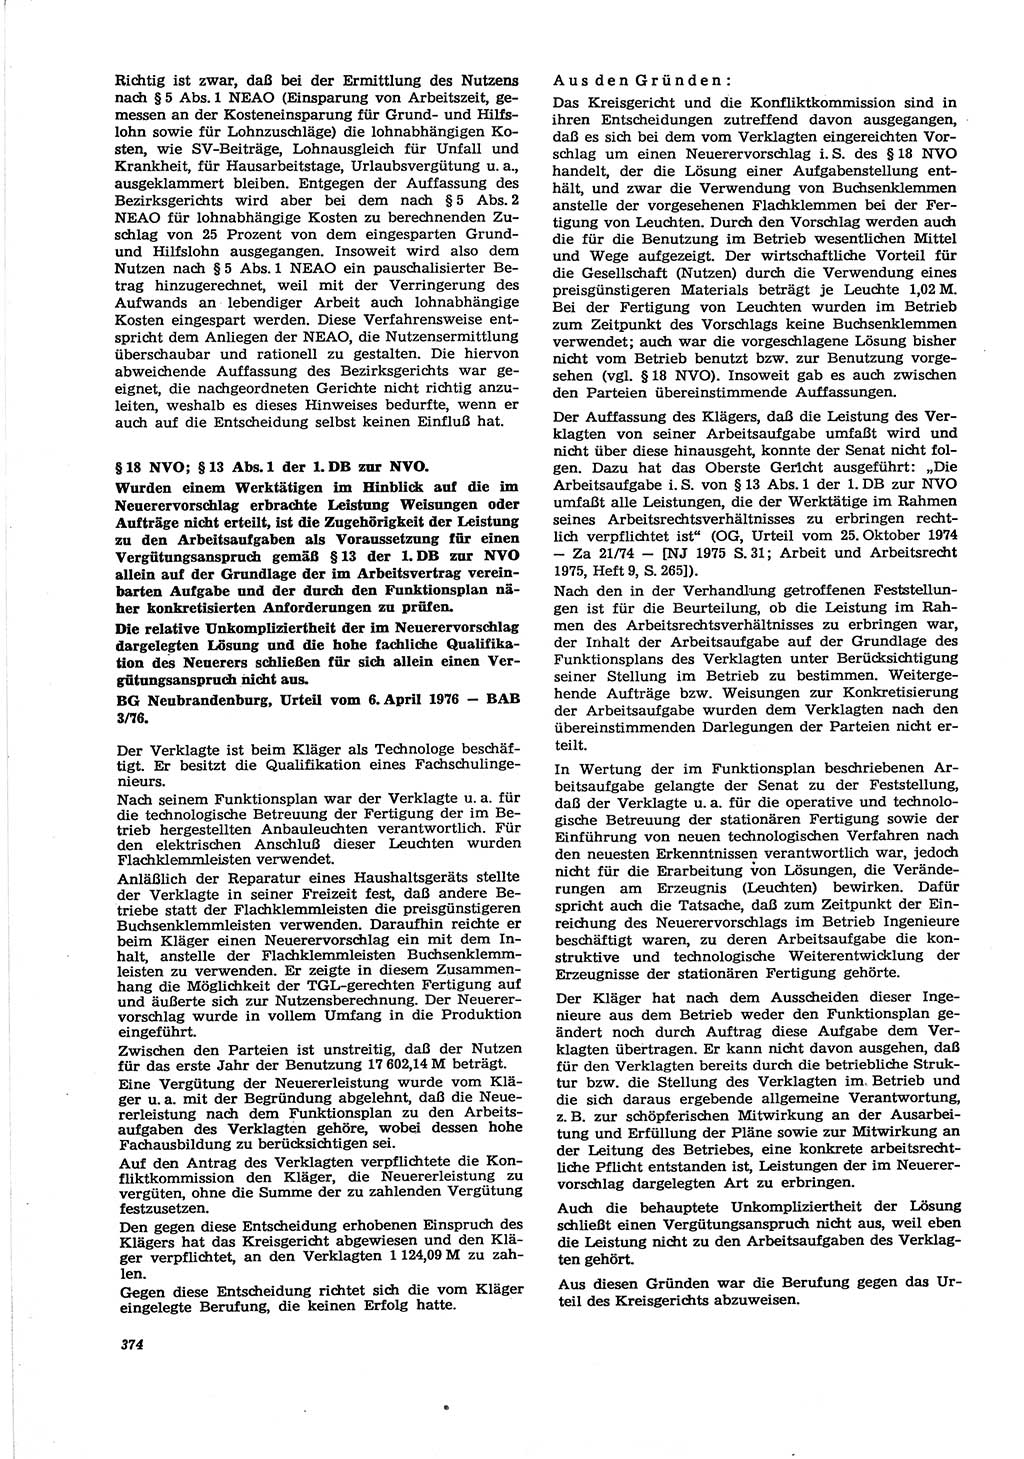 Neue Justiz (NJ), Zeitschrift für Recht und Rechtswissenschaft [Deutsche Demokratische Republik (DDR)], 30. Jahrgang 1976, Seite 374 (NJ DDR 1976, S. 374)